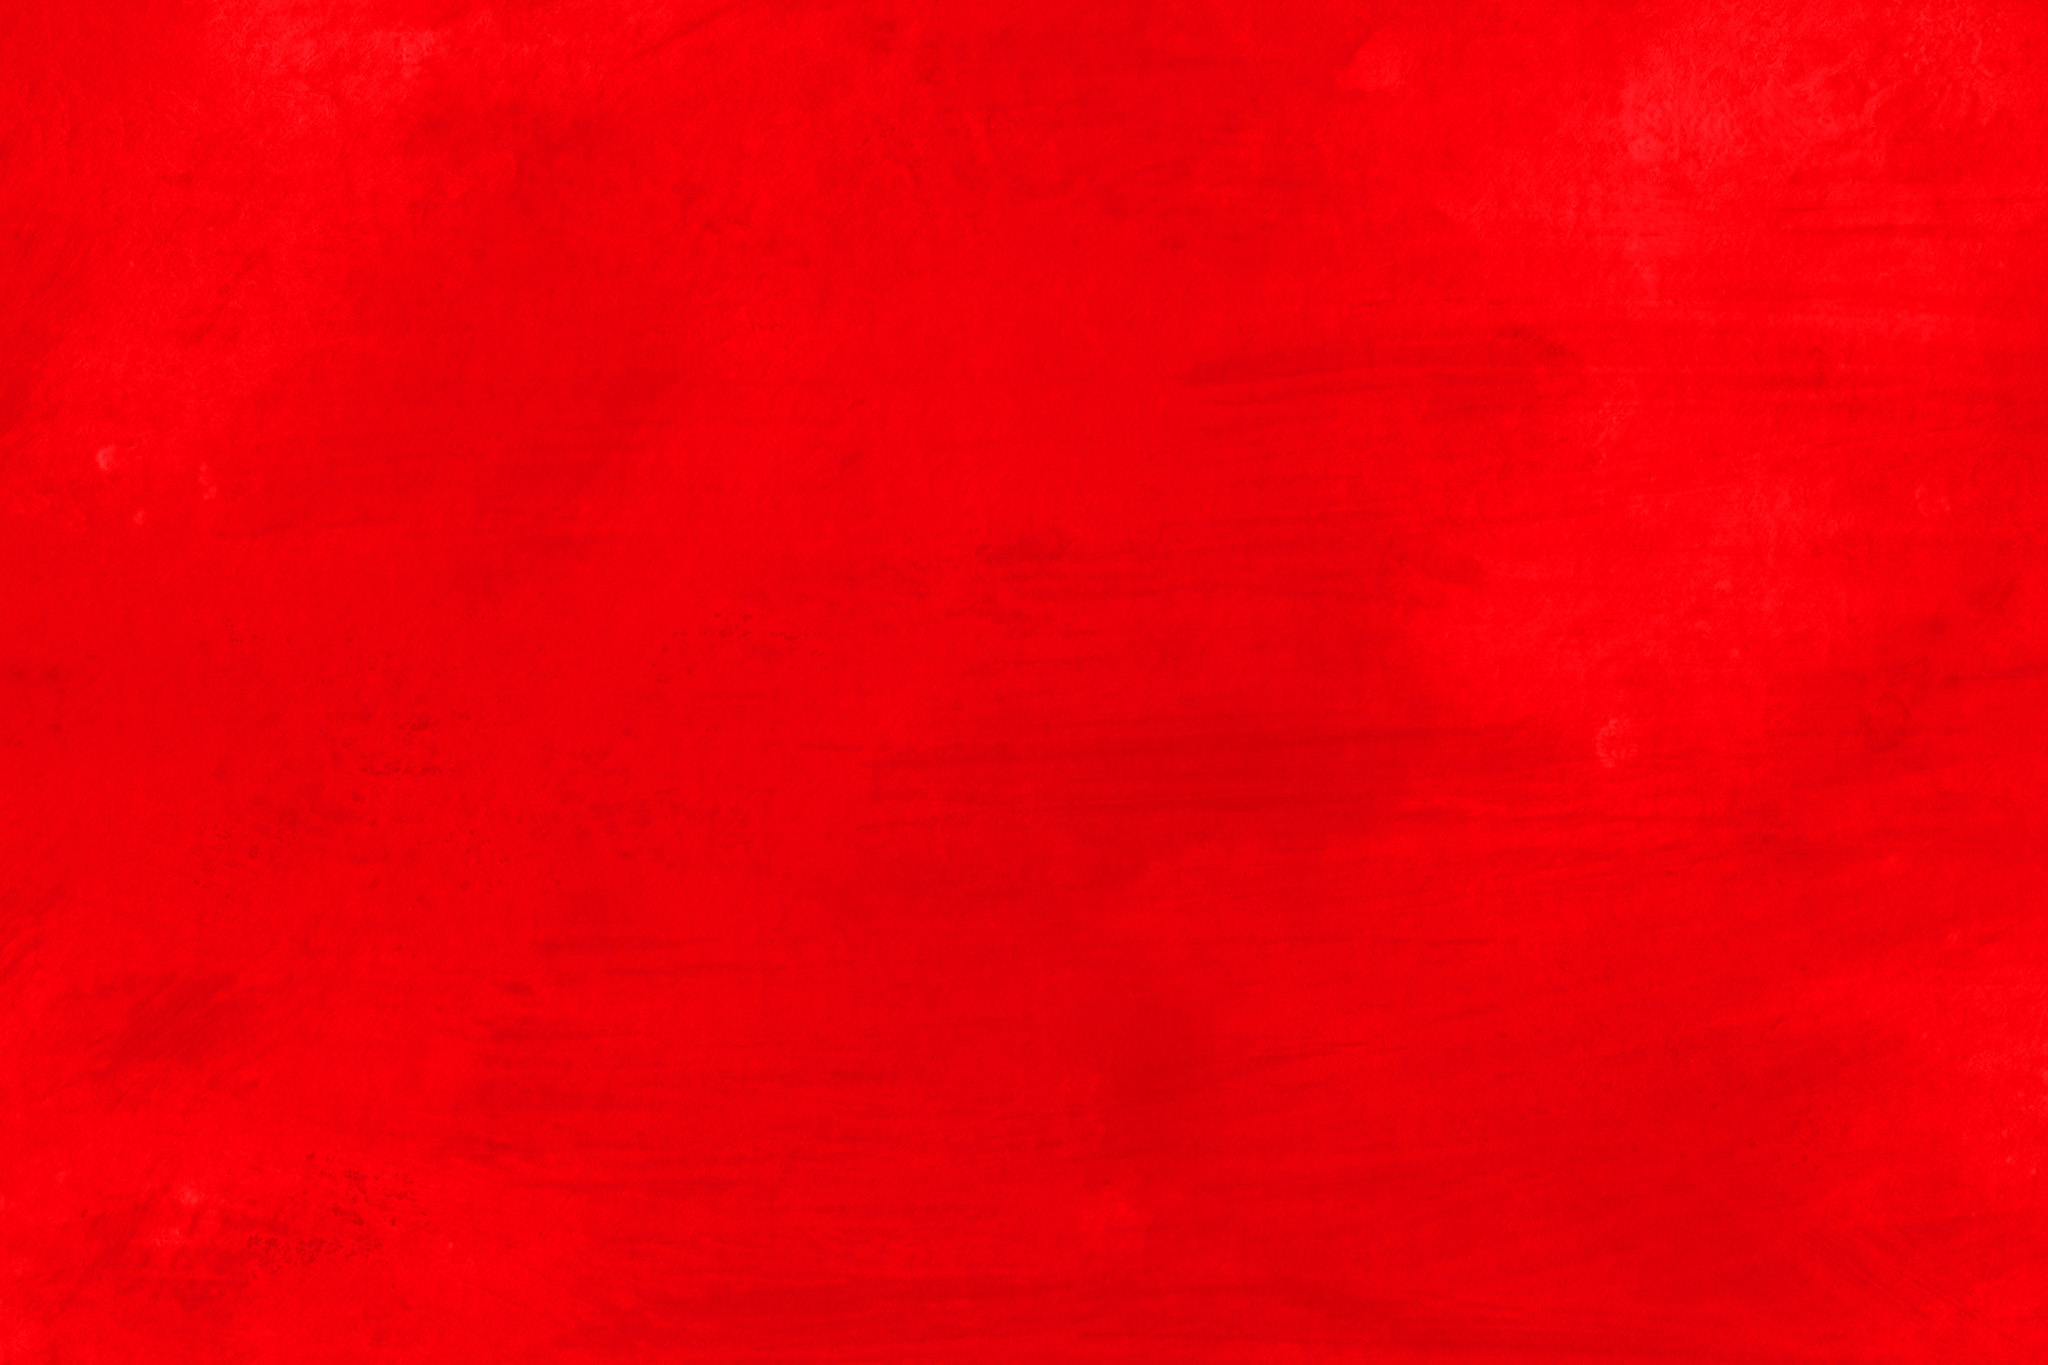 おしゃれな赤色のかっこいい壁紙 の画像素材を無料ダウンロード 1 フリー素材 Beiz Images